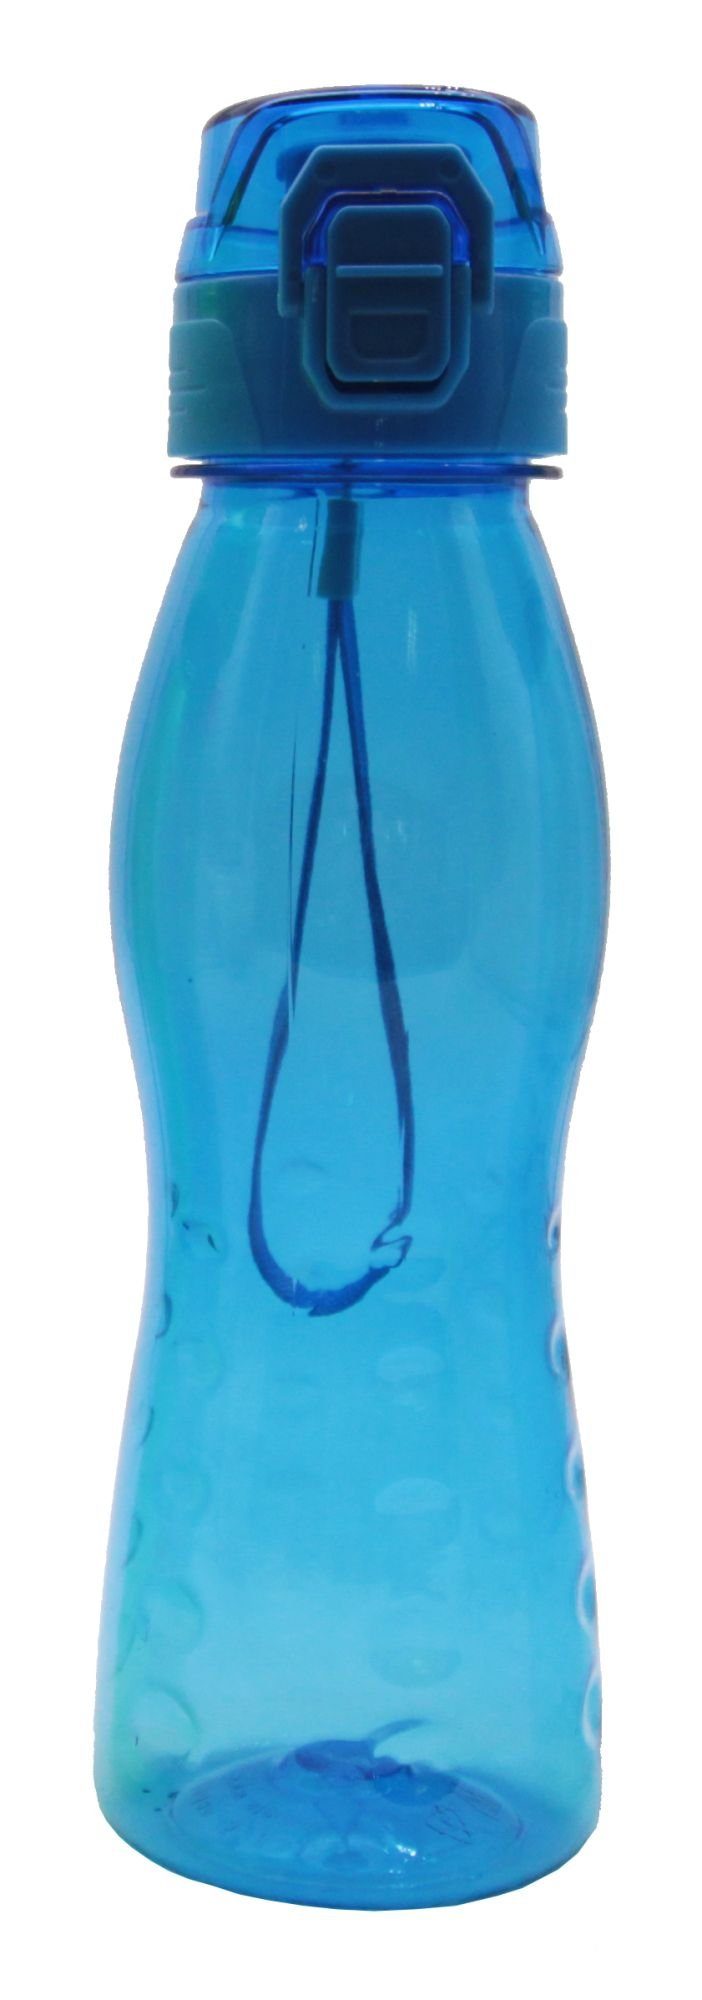 Steuber Trinkflasche, Klick Top Premium Freizeit Trinkflasche, 700 ml, 5 Stück